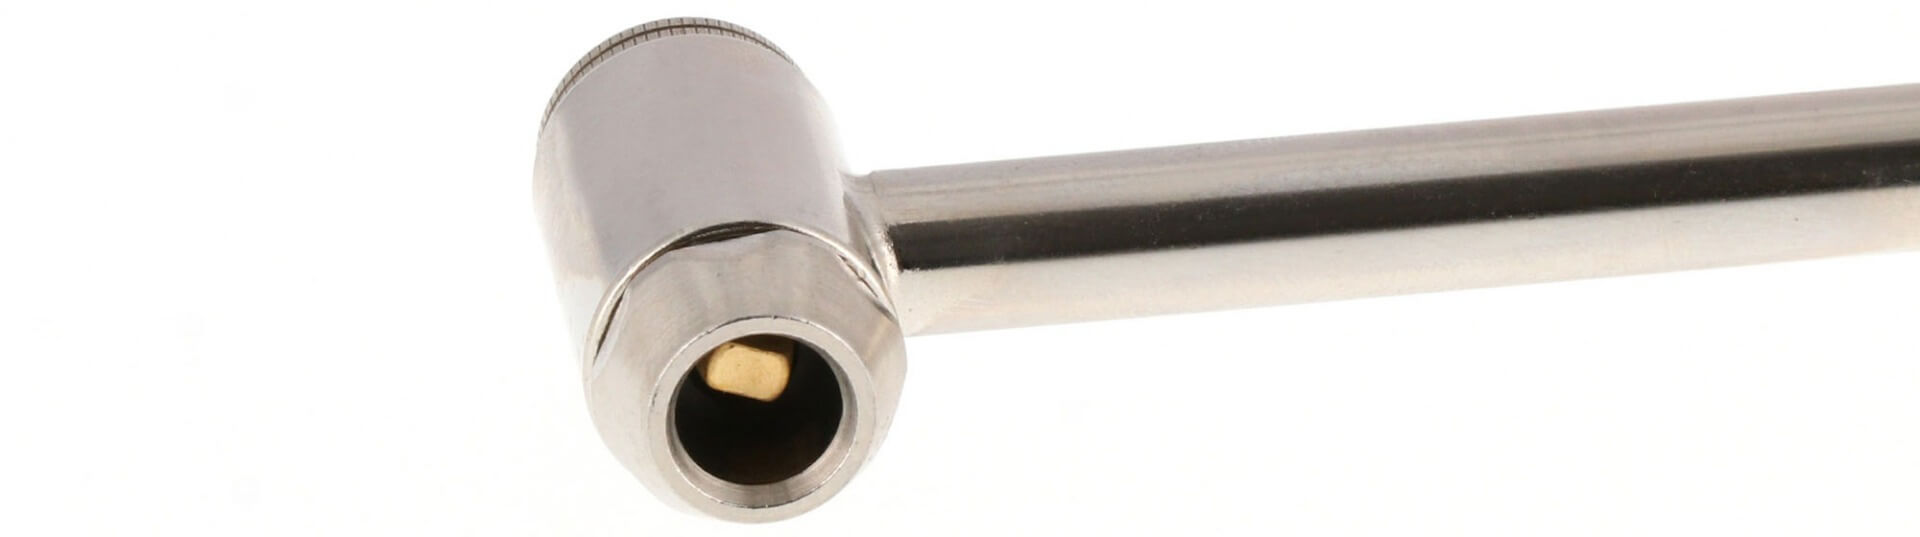 Aansluiting op band bandenpomp pompstok van 8  mm